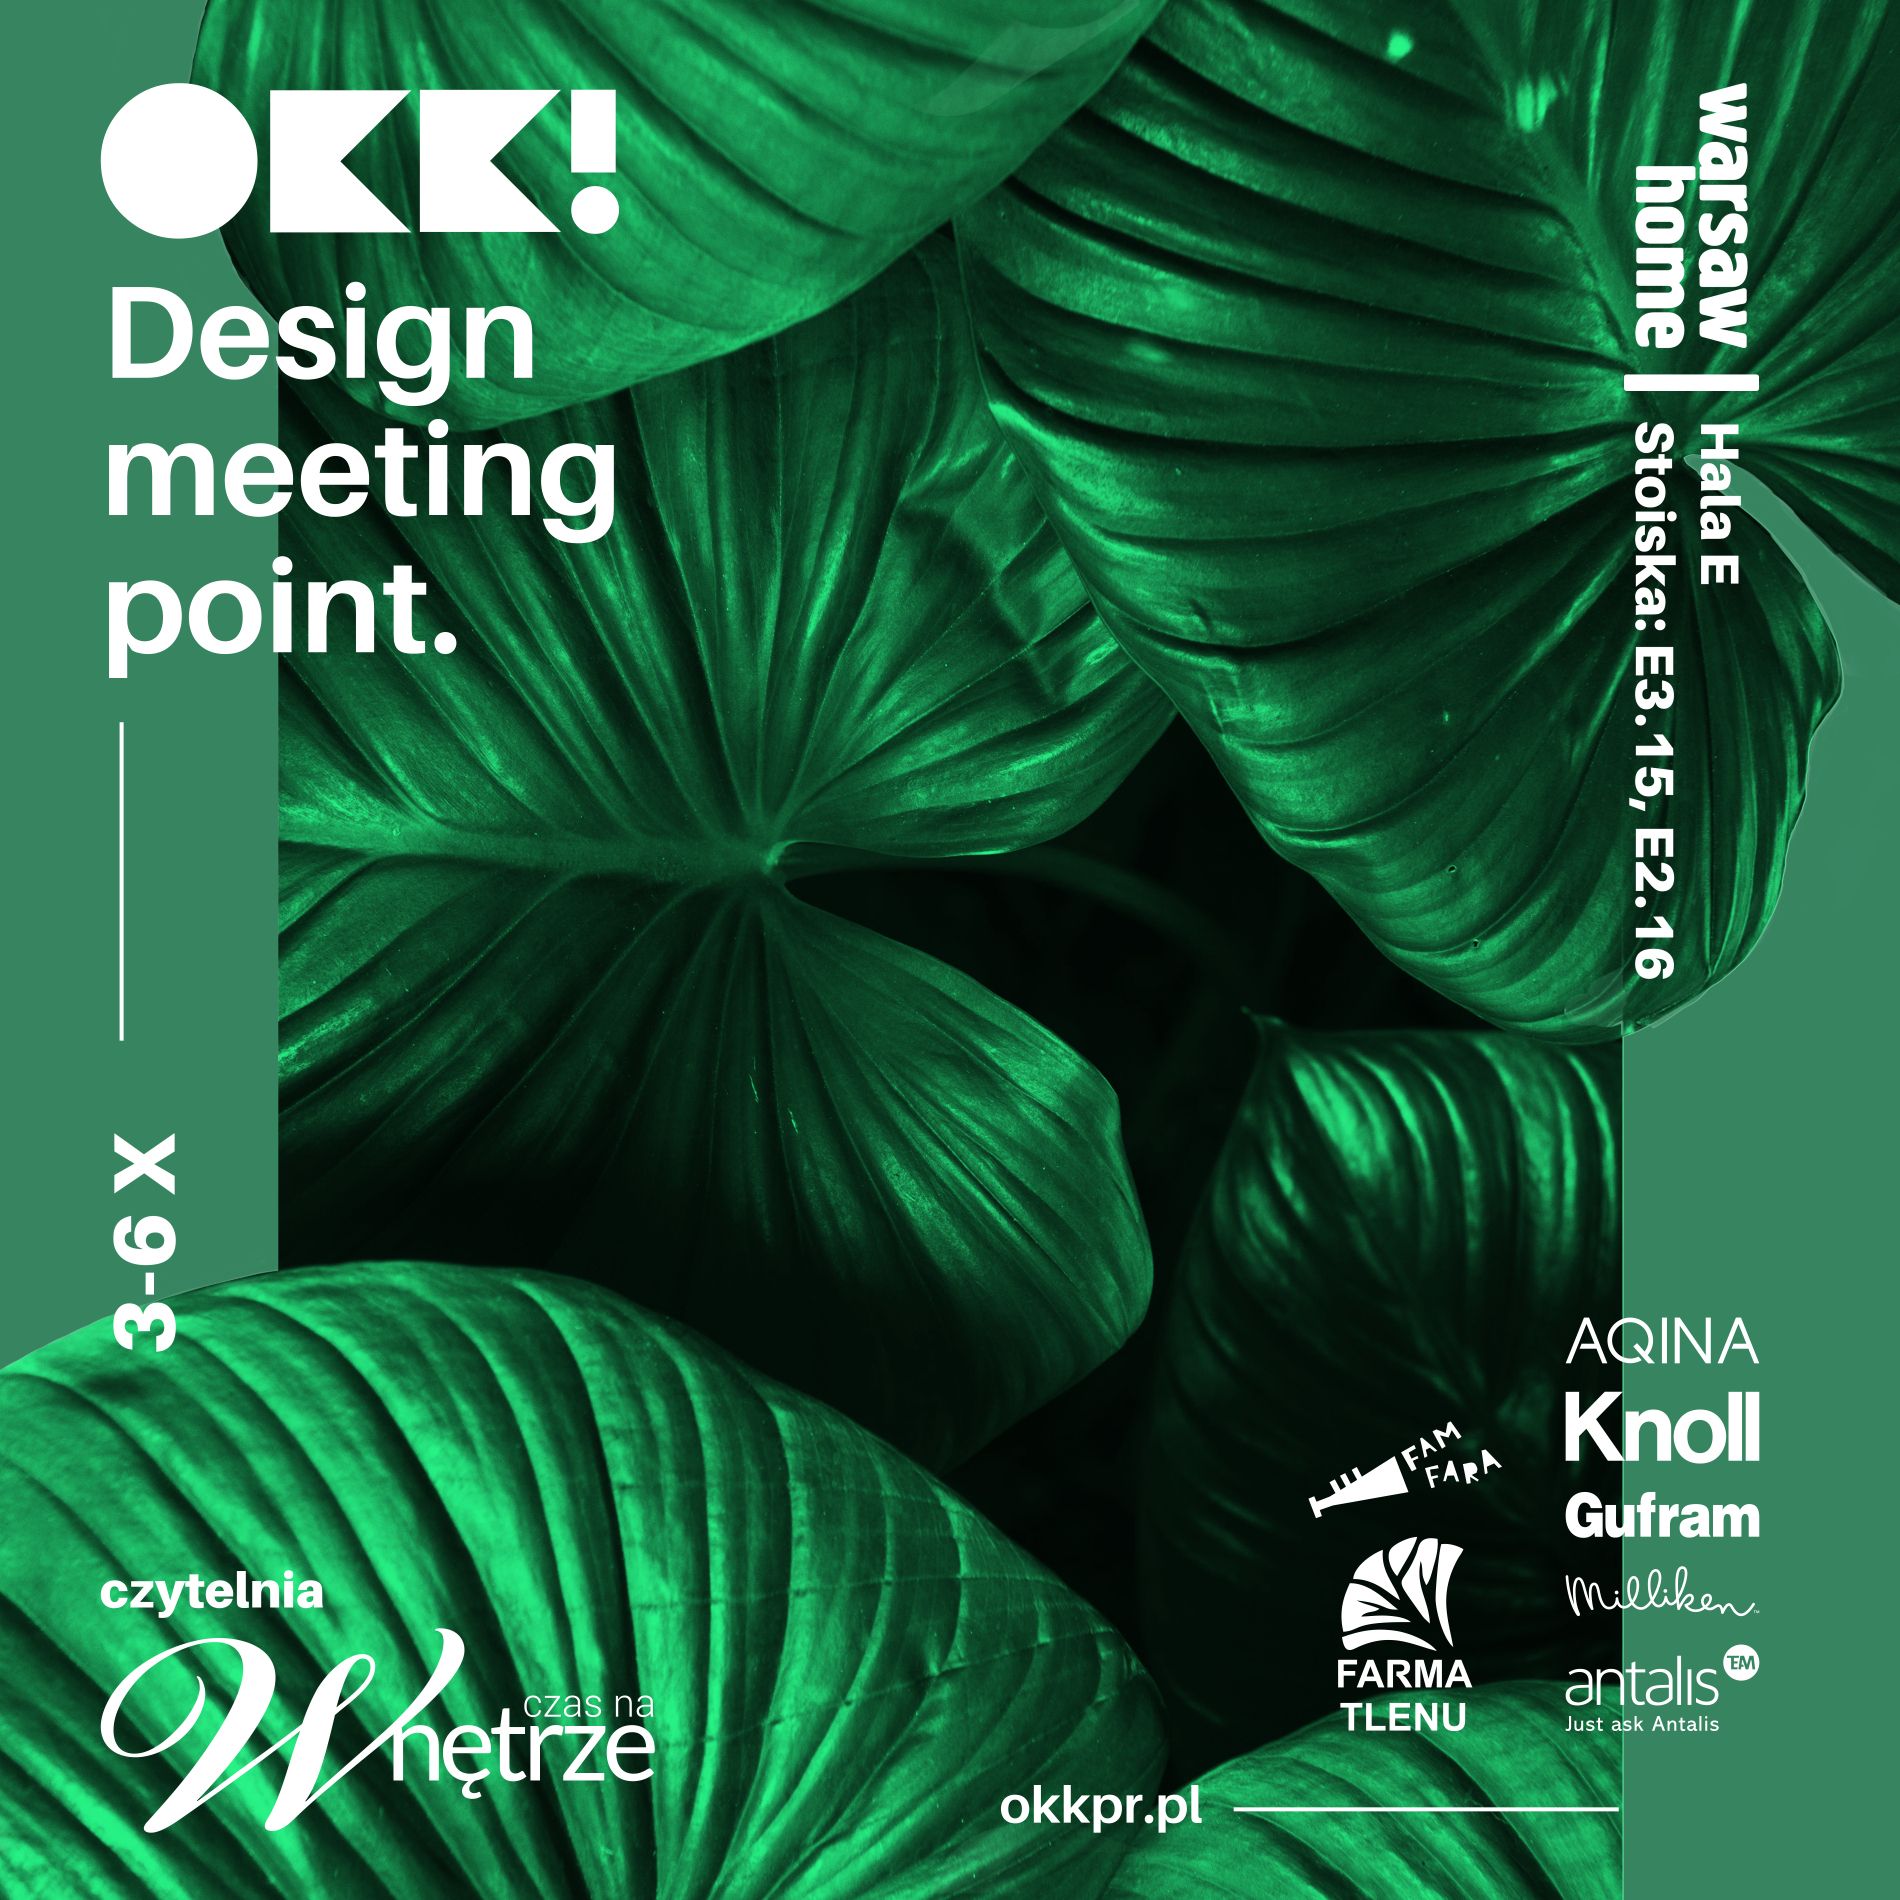 Spotkajmy się: OKK! design meeting point na Warsaw Home Expo